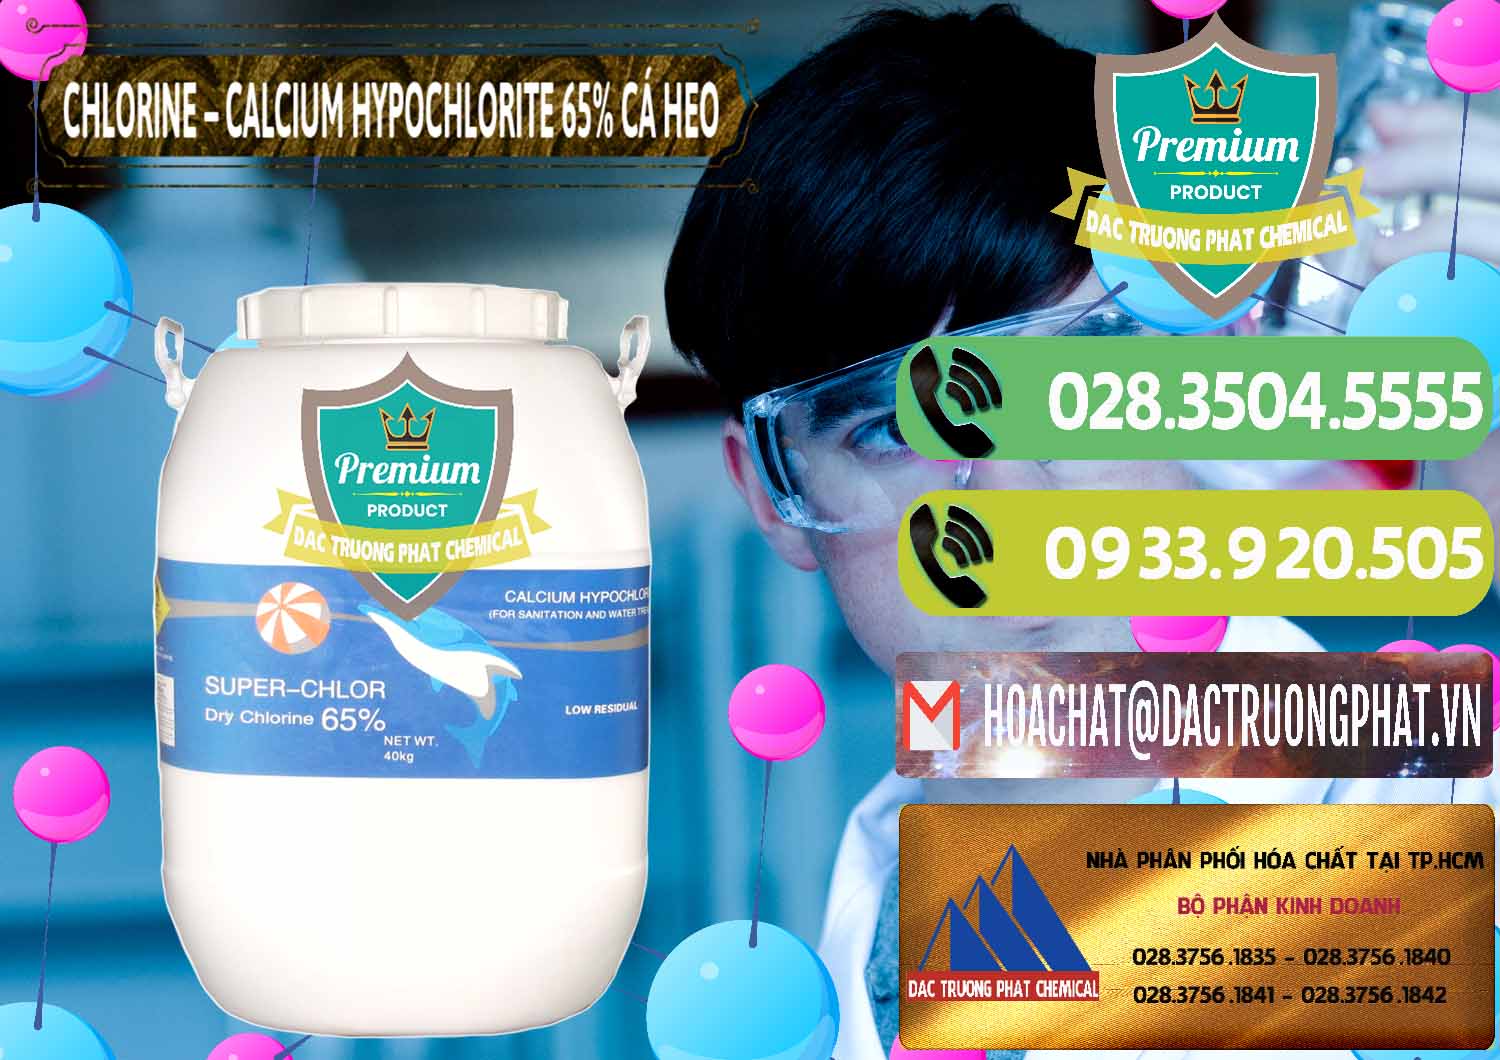 Nơi cung ứng _ bán Clorin - Chlorine Cá Heo 65% Trung Quốc China - 0053 - Bán _ phân phối hóa chất tại TP.HCM - hoachatmientay.vn